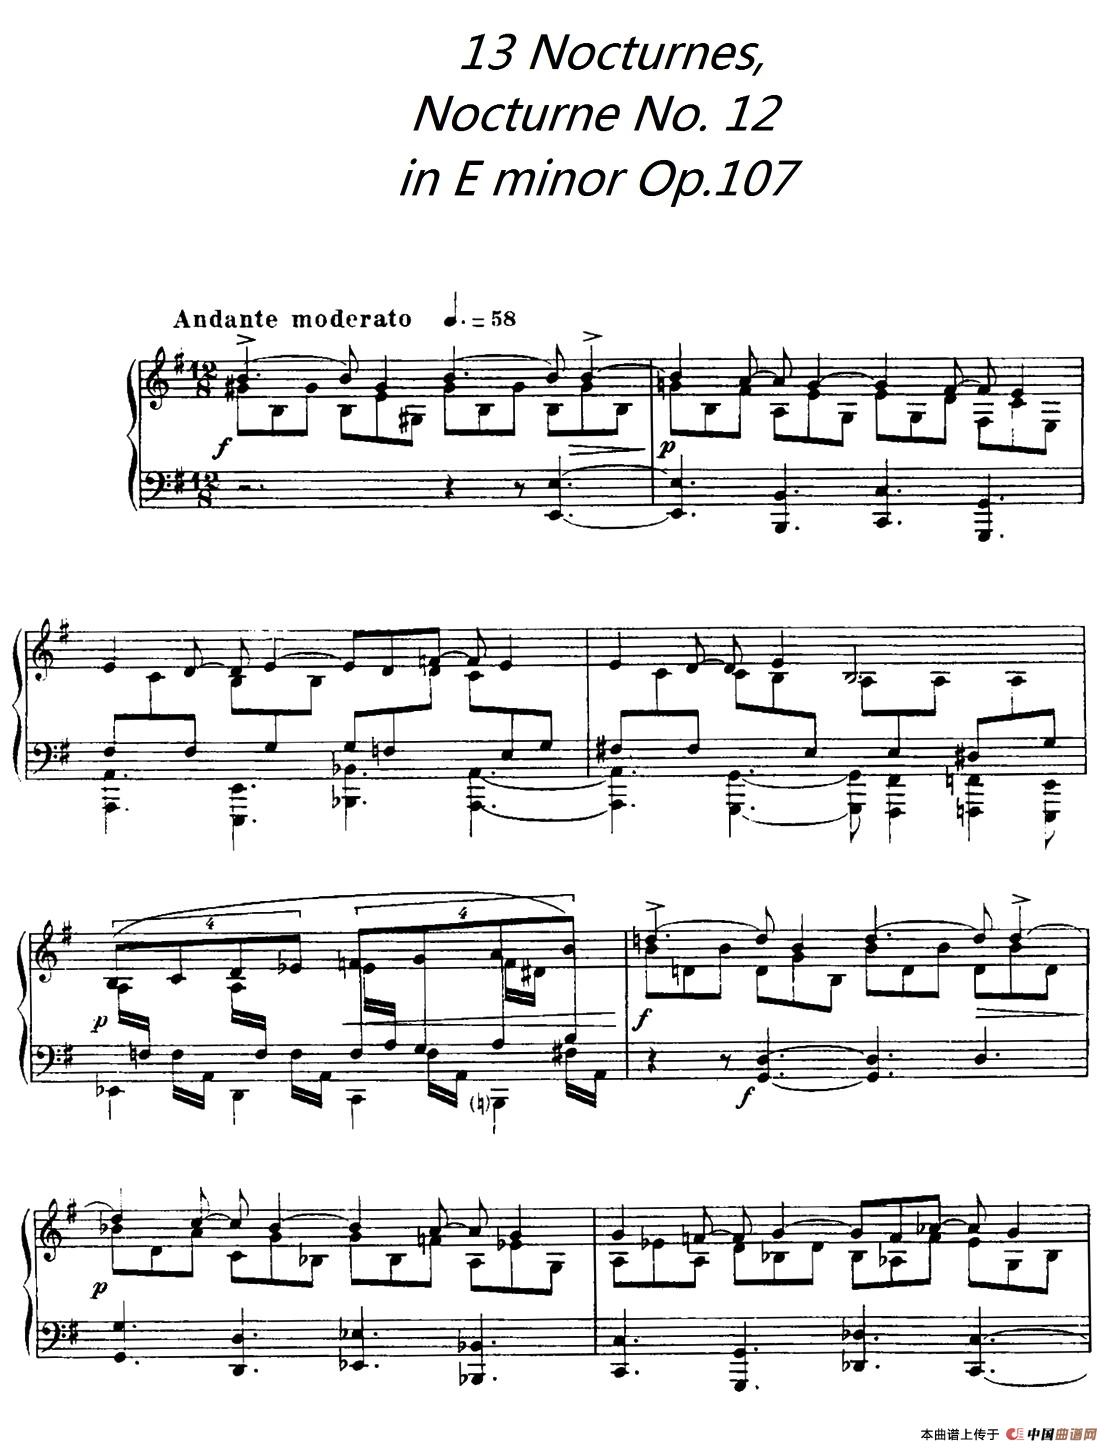 13 Nocturnes, Nocturne No. 12 in E minor （Op.107）(1)_001.jpg